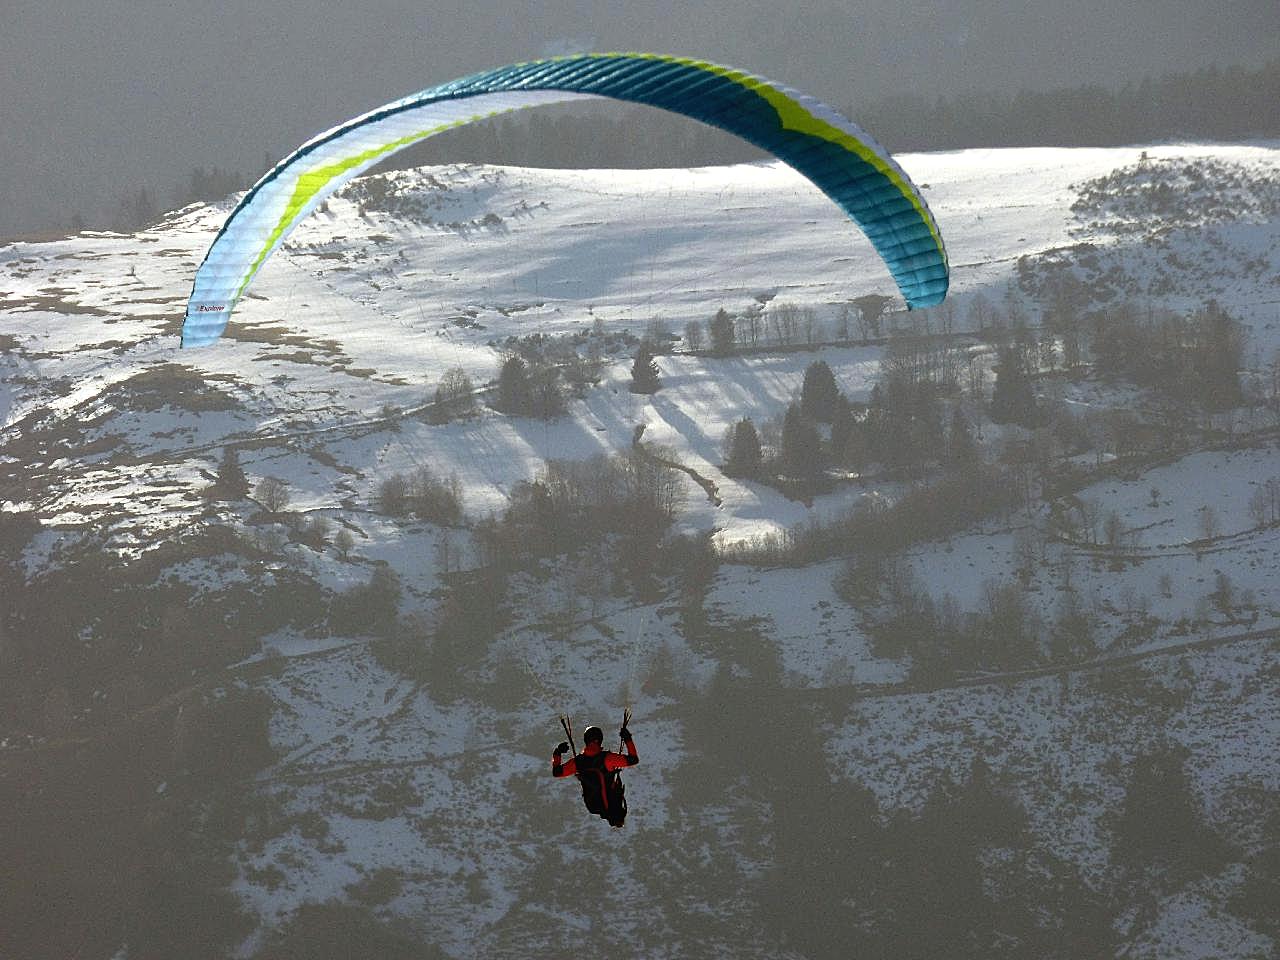 高地滑翔伞降落图片户外运动